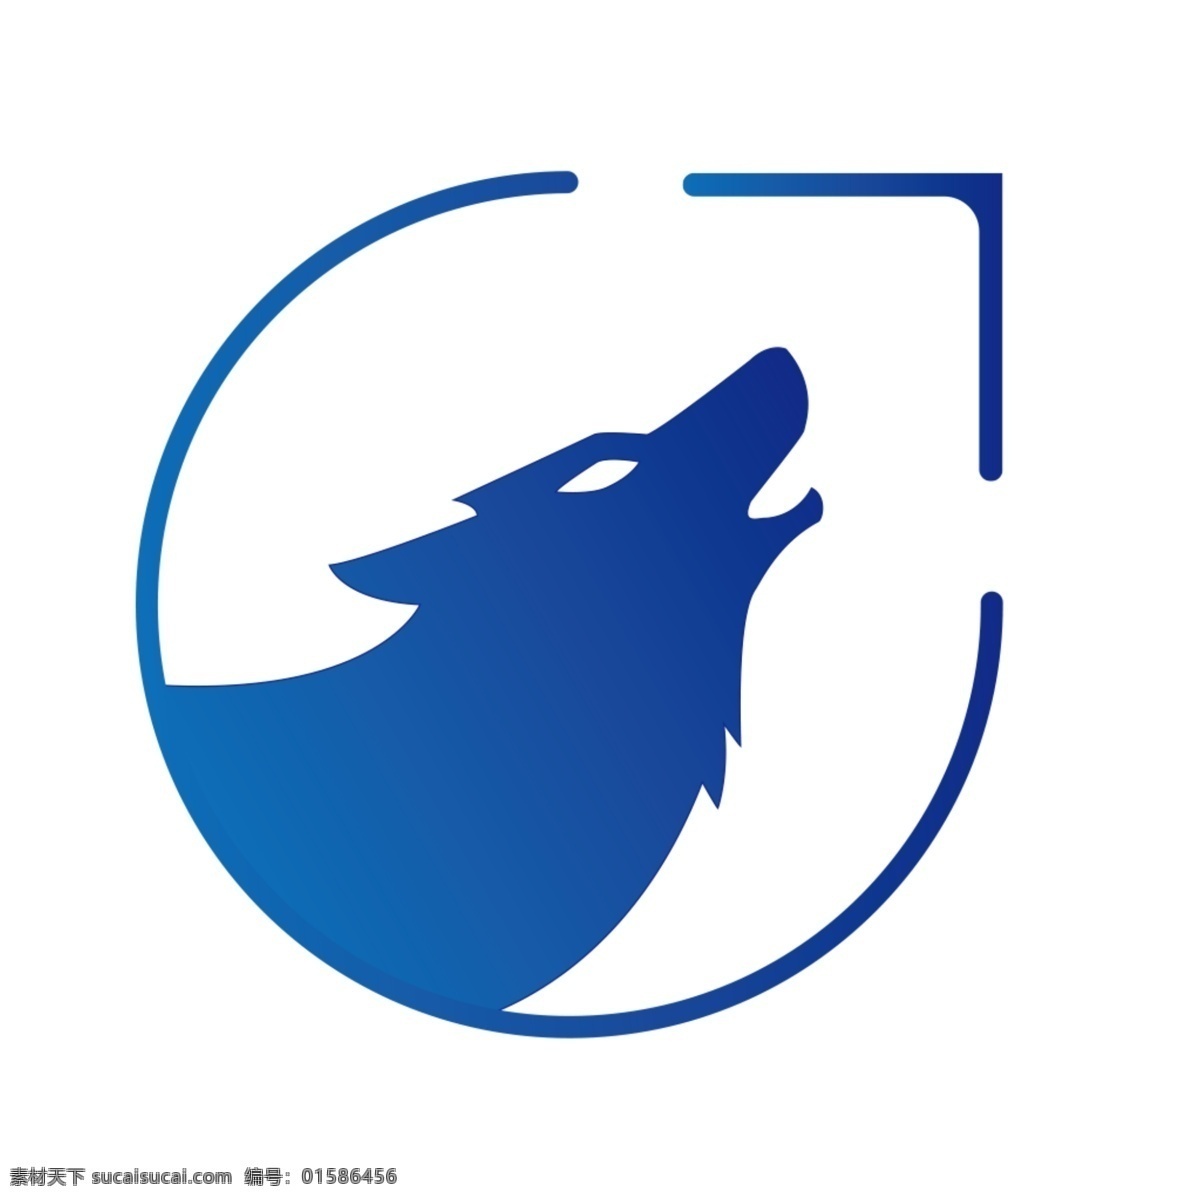 狼 logo logo设计 狼性团队 团结 合作 狼性文化